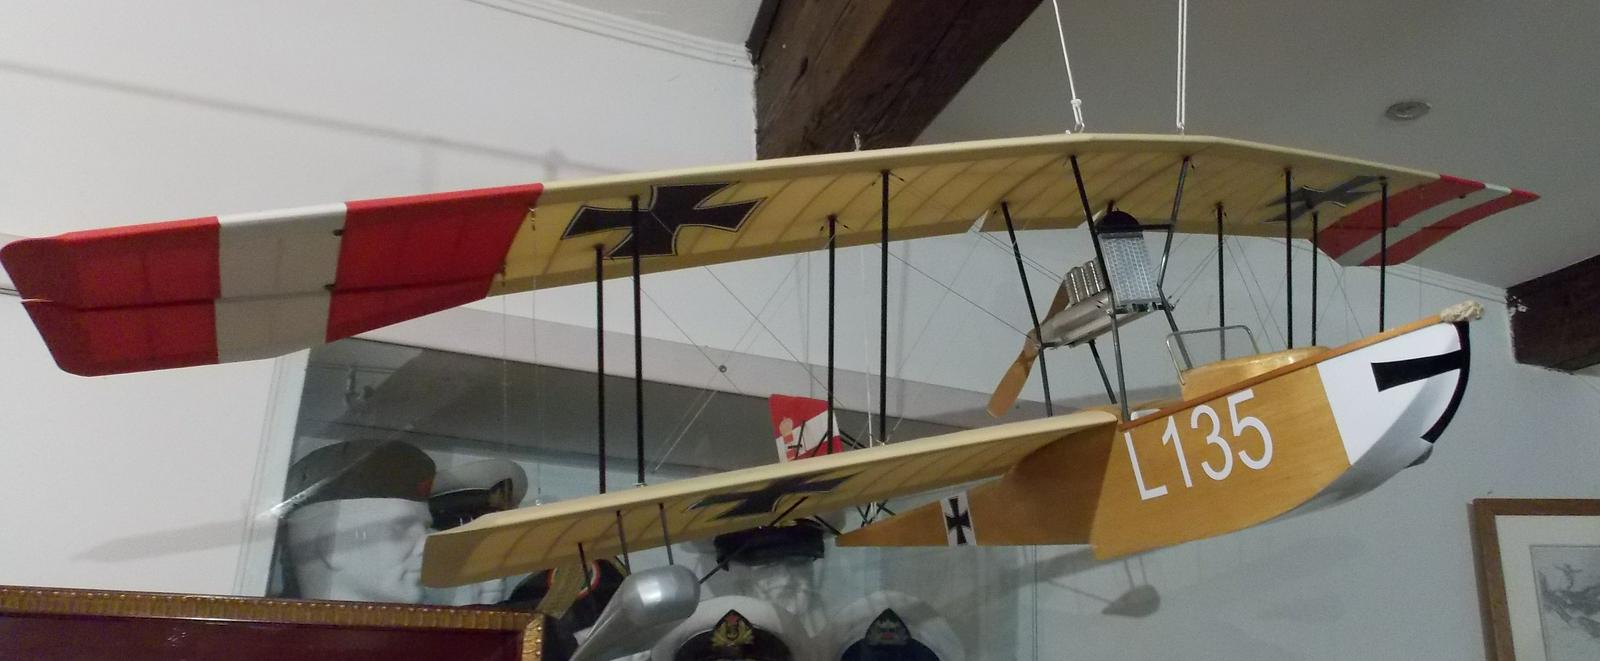 Lohnerjevo vodno letalo. Hrani Muzej Gallerion v Novigradu.